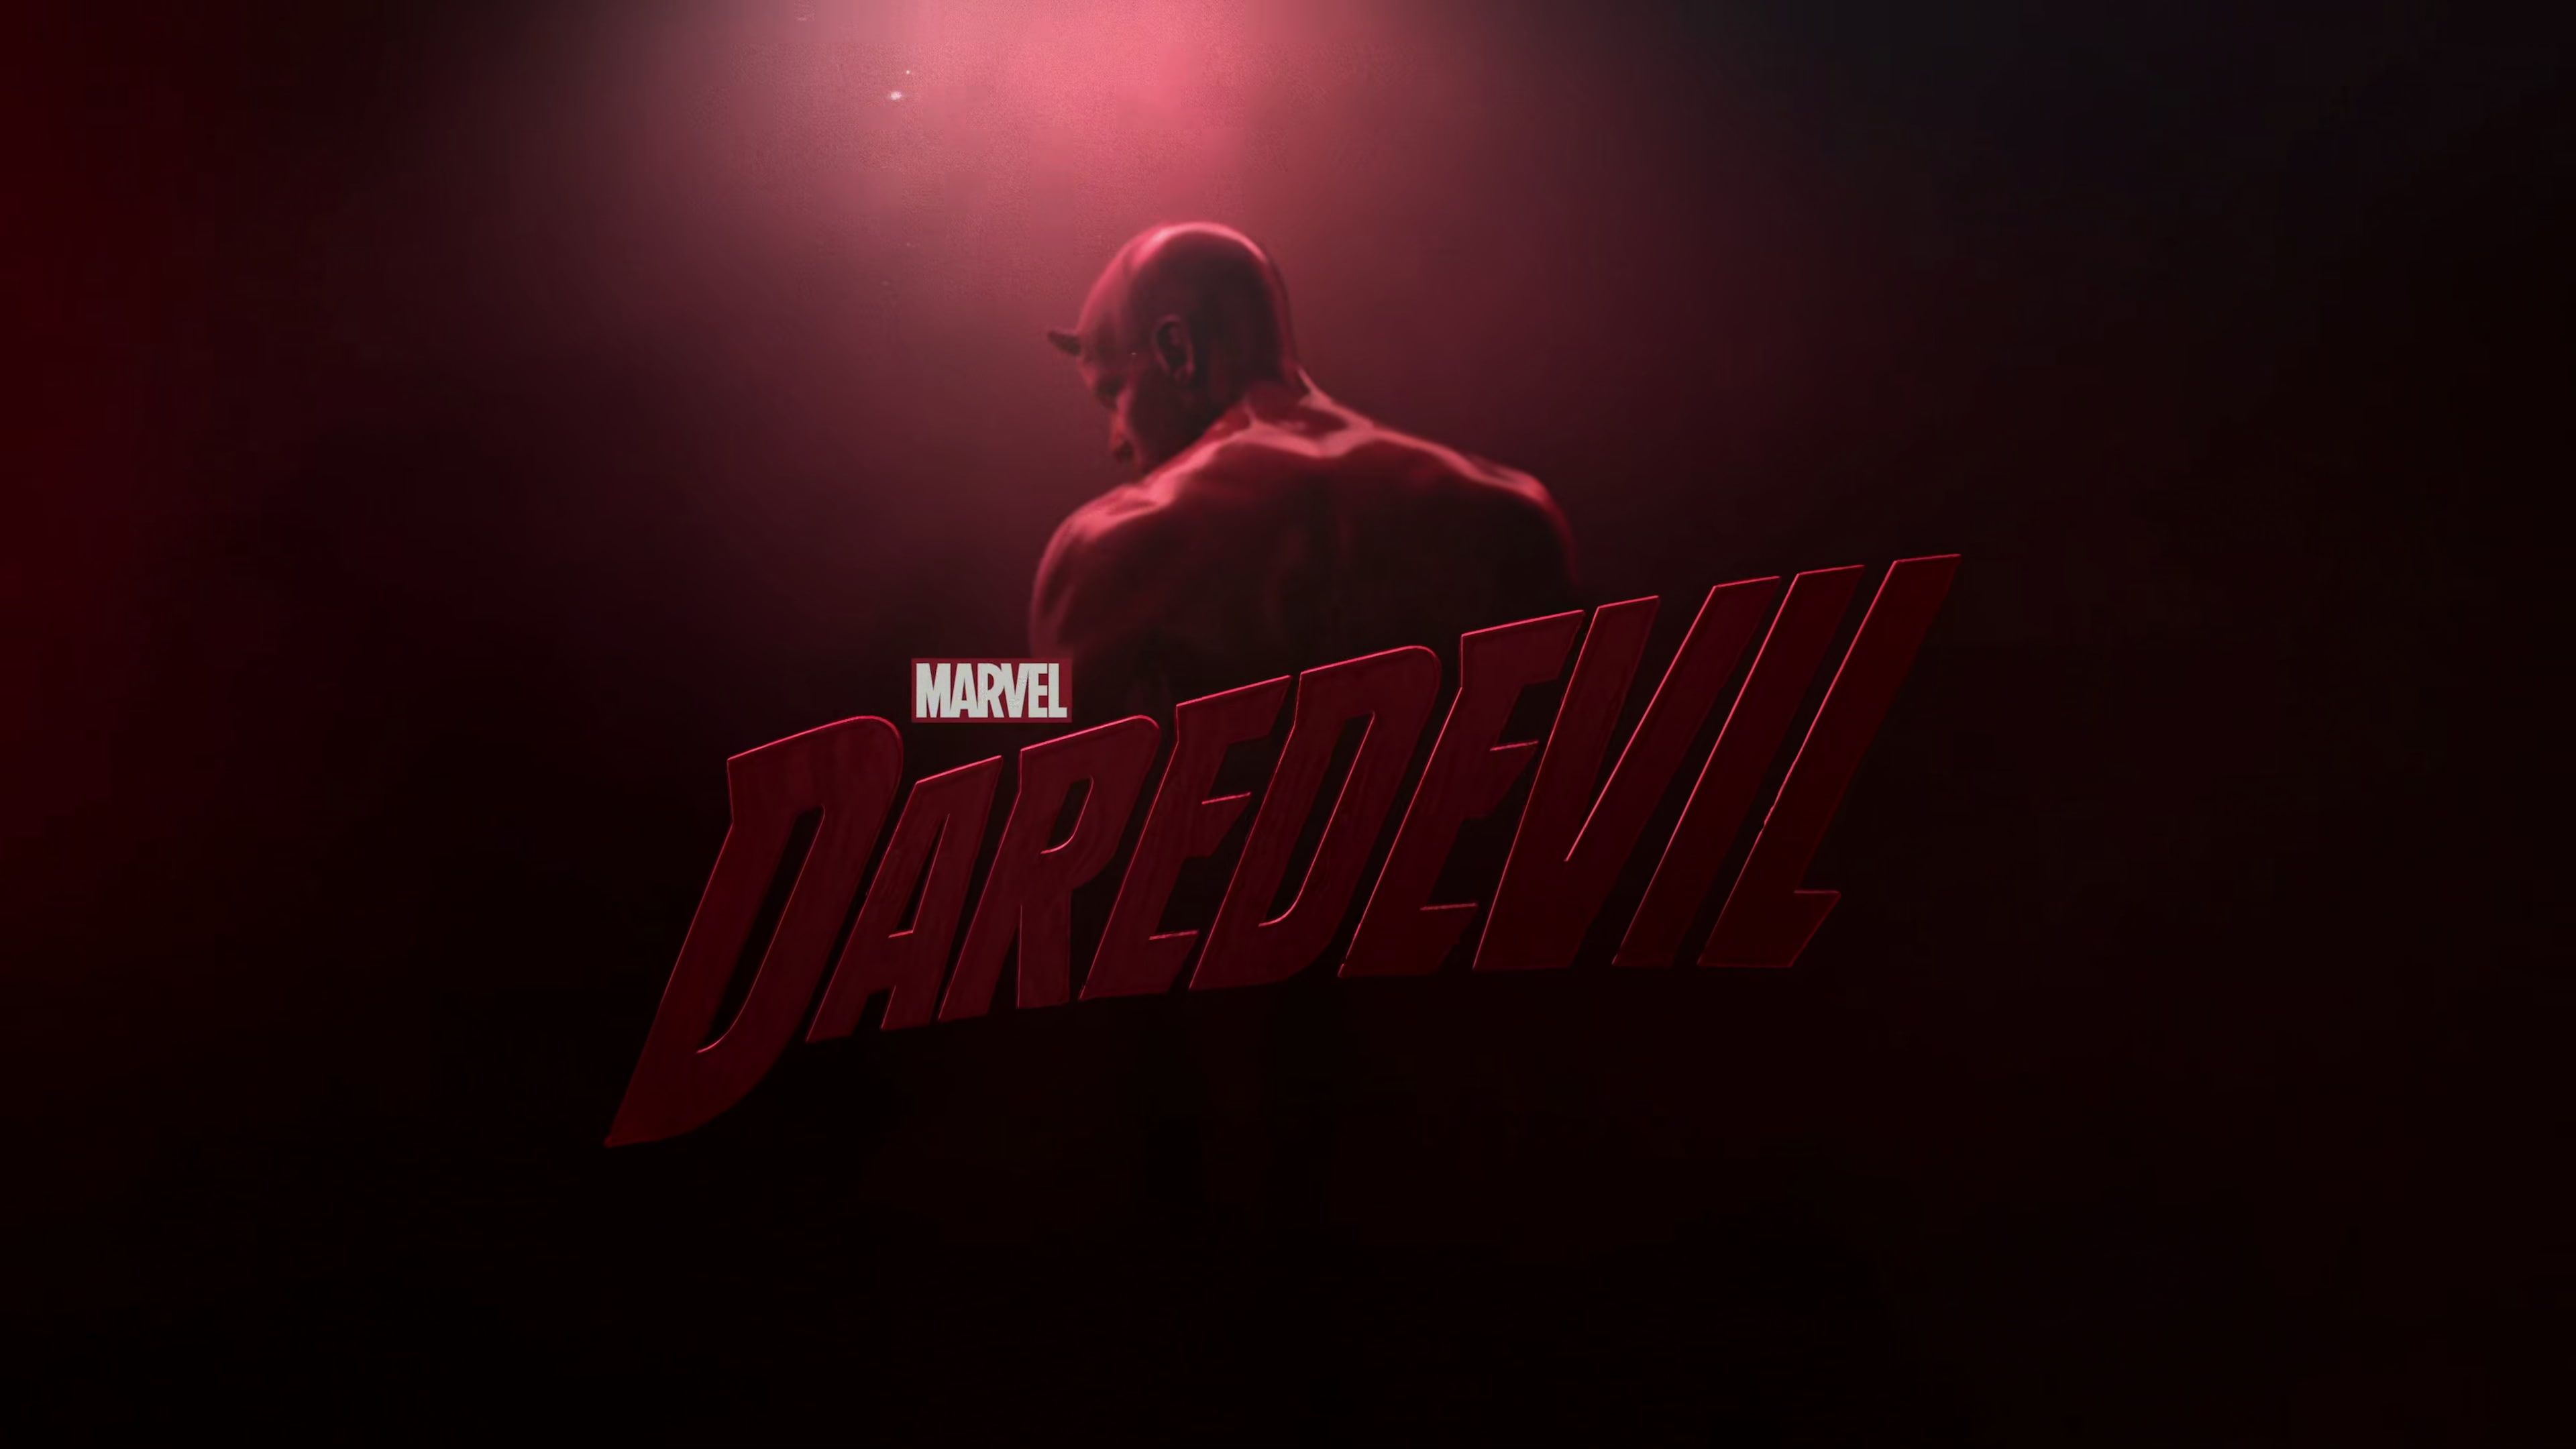 Fondos de pantalla de Daredevil - FondosMil